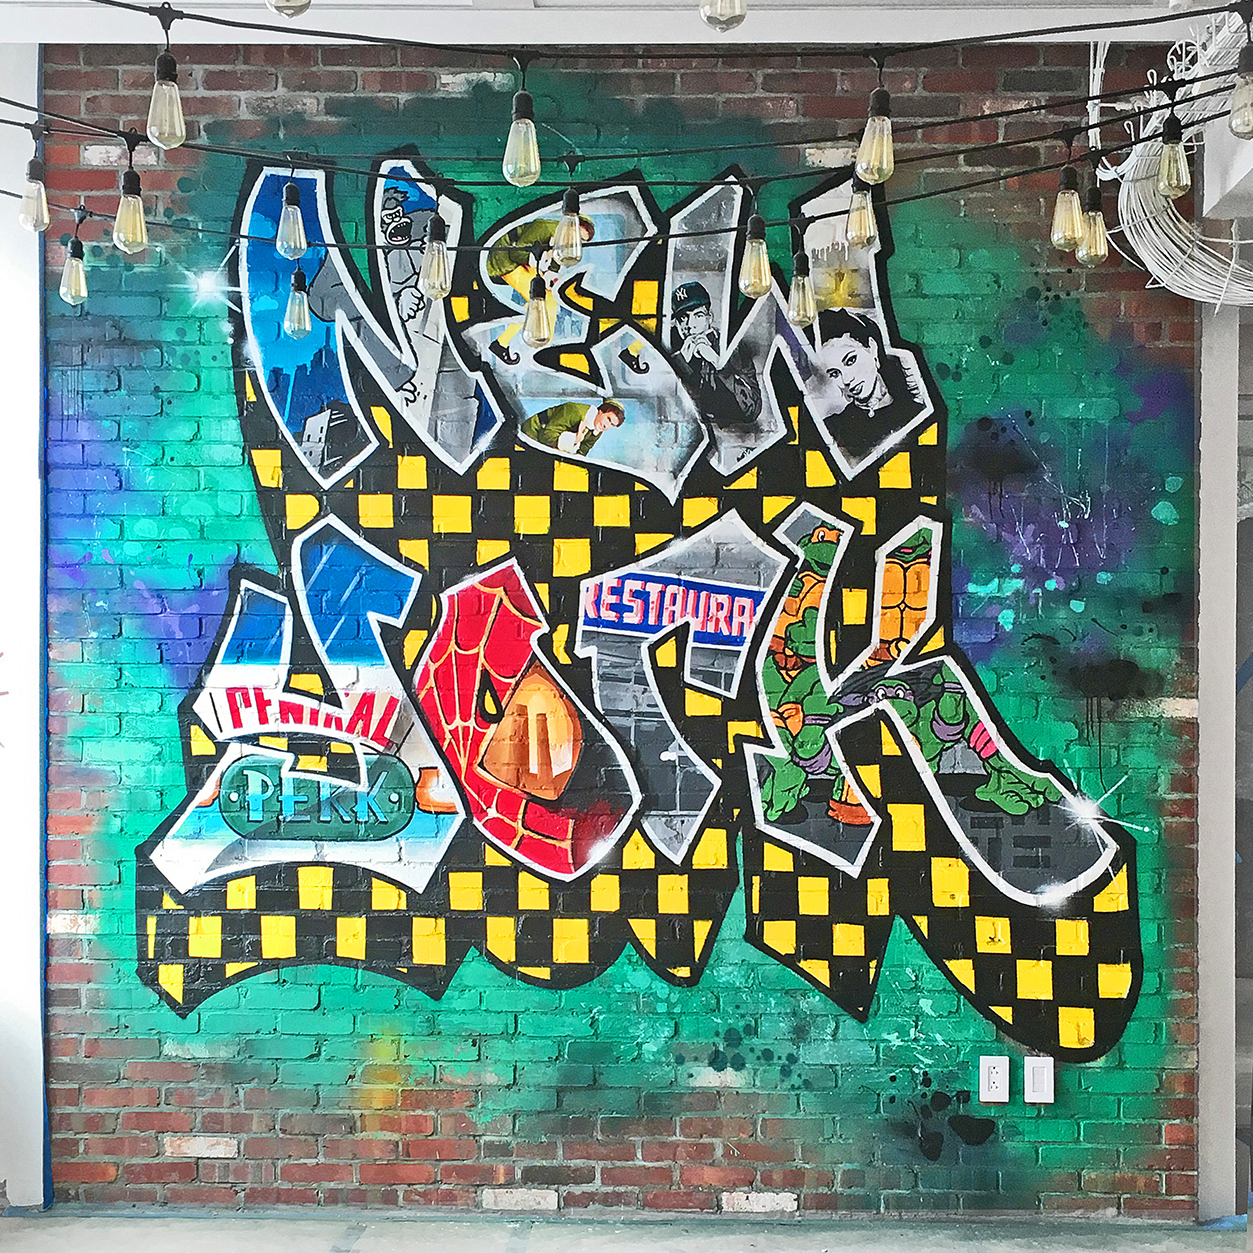 NY office graffiti mural